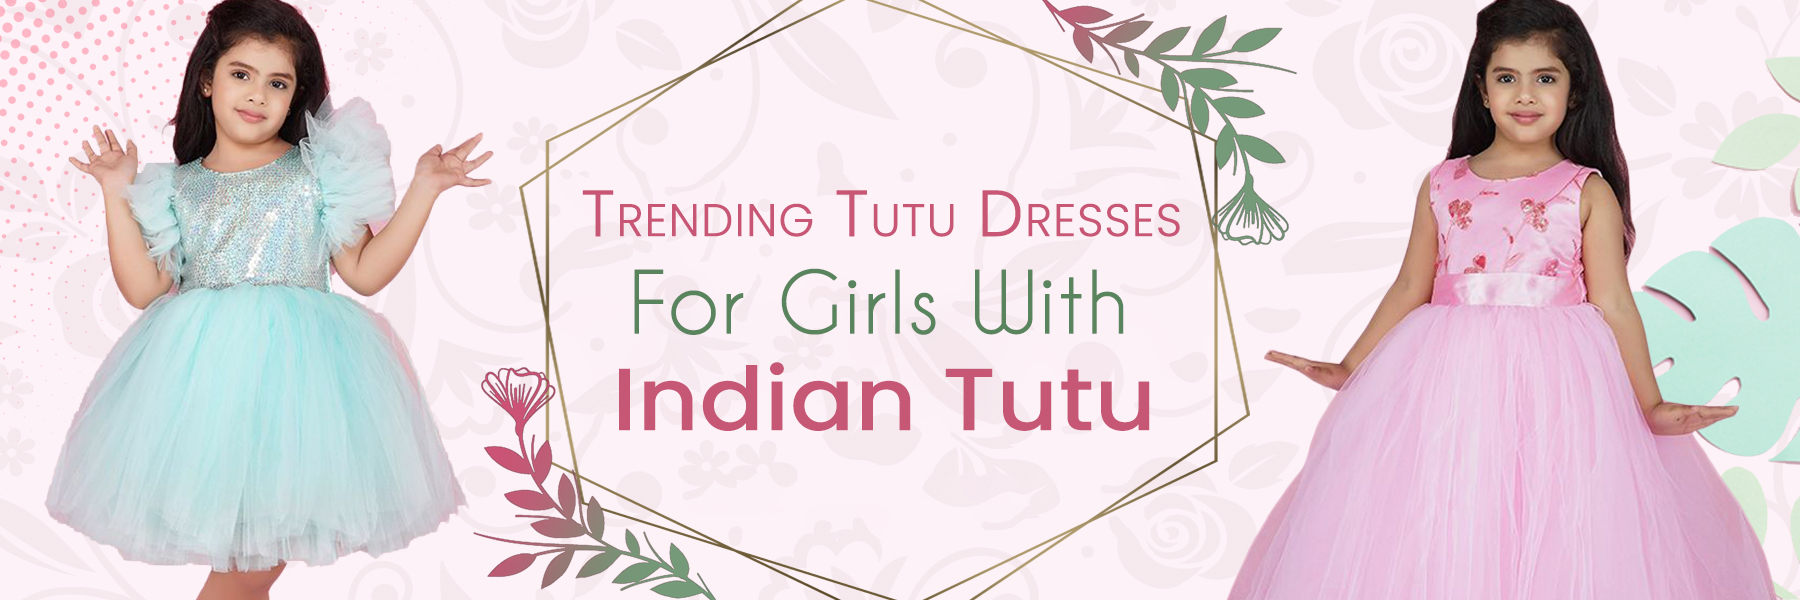 Trending Tutu Dresses